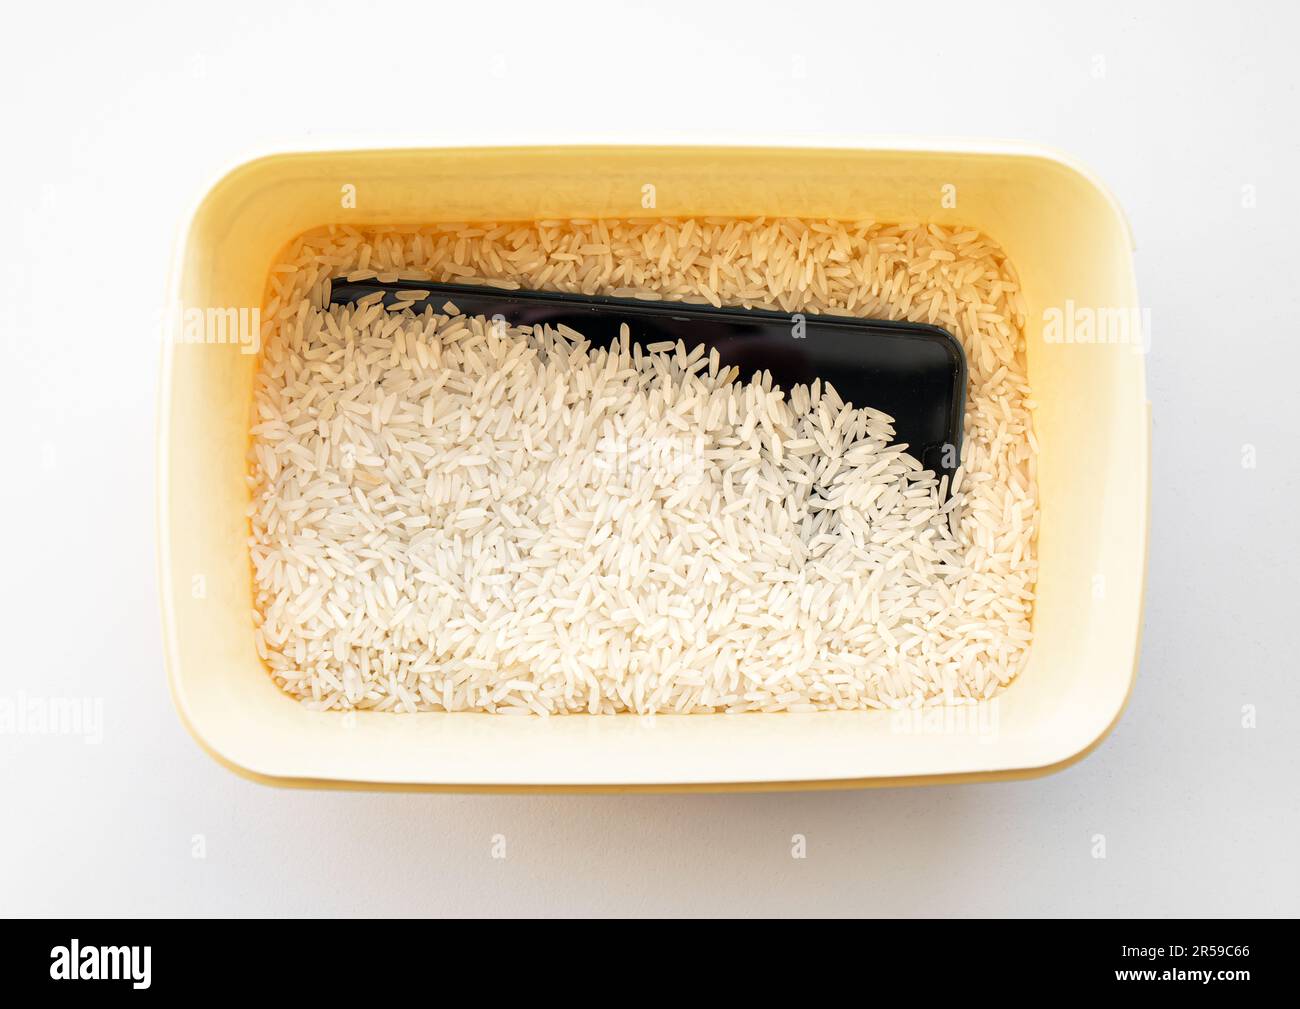 Wasser oder Flüssigkeit beschädigt Smartphone trocken in der Box gefüllt mit ungekochtem weißem Reiswitz, der angeblich Feuchtigkeit absorbiert, aber einige sagen, Reisstaub kann Schaden anrichten. Stockfoto